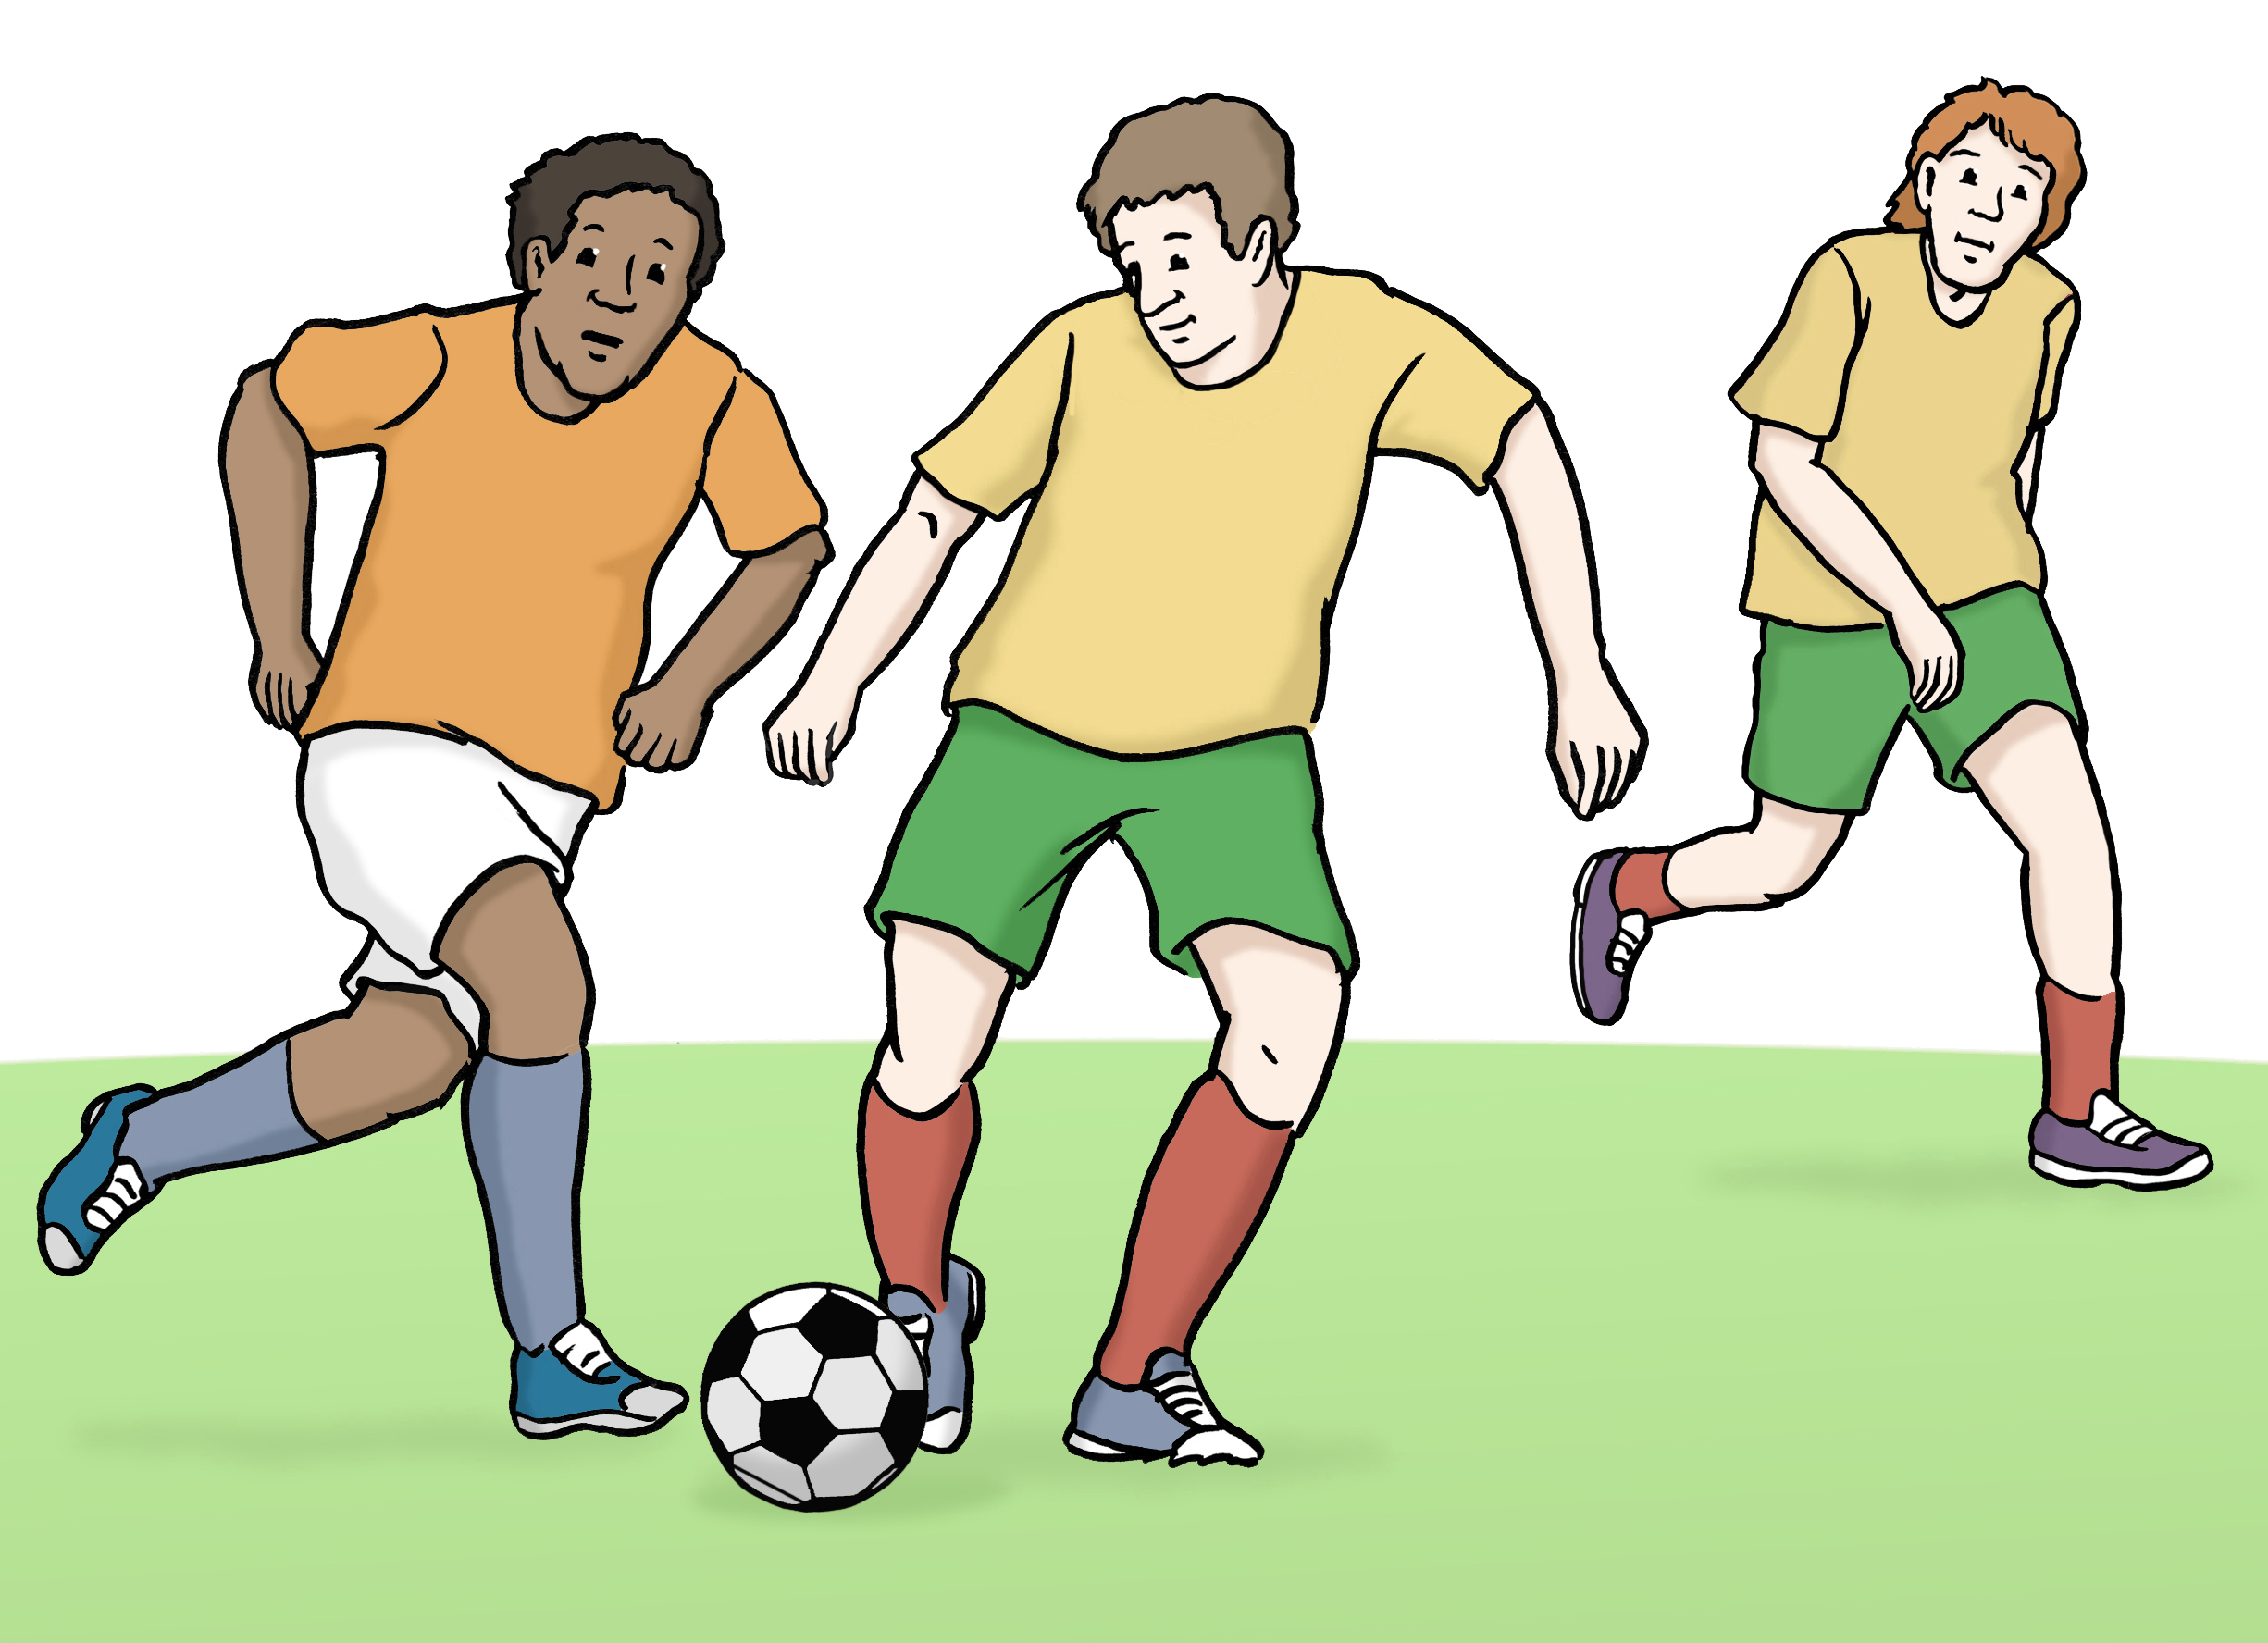 Bildbeschreibung: Drei Personen spielen Fußball.